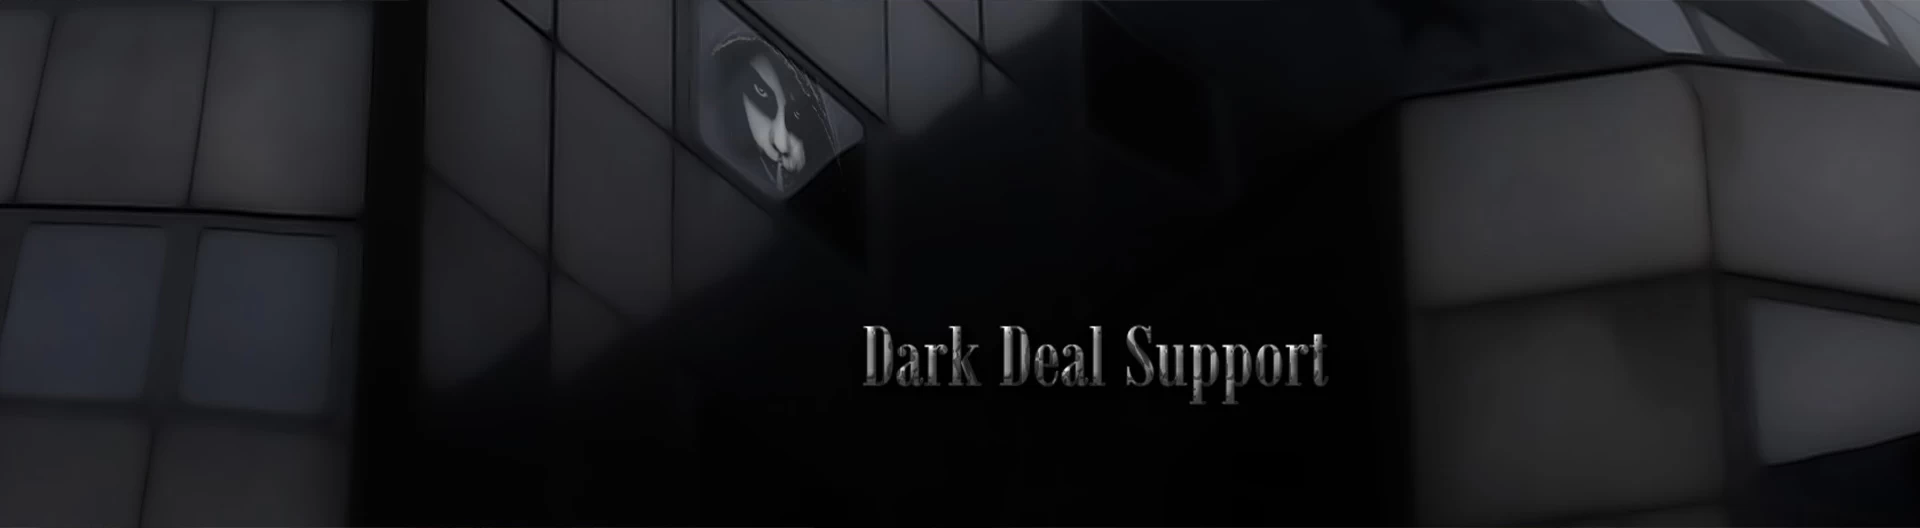 Dark Deal Support